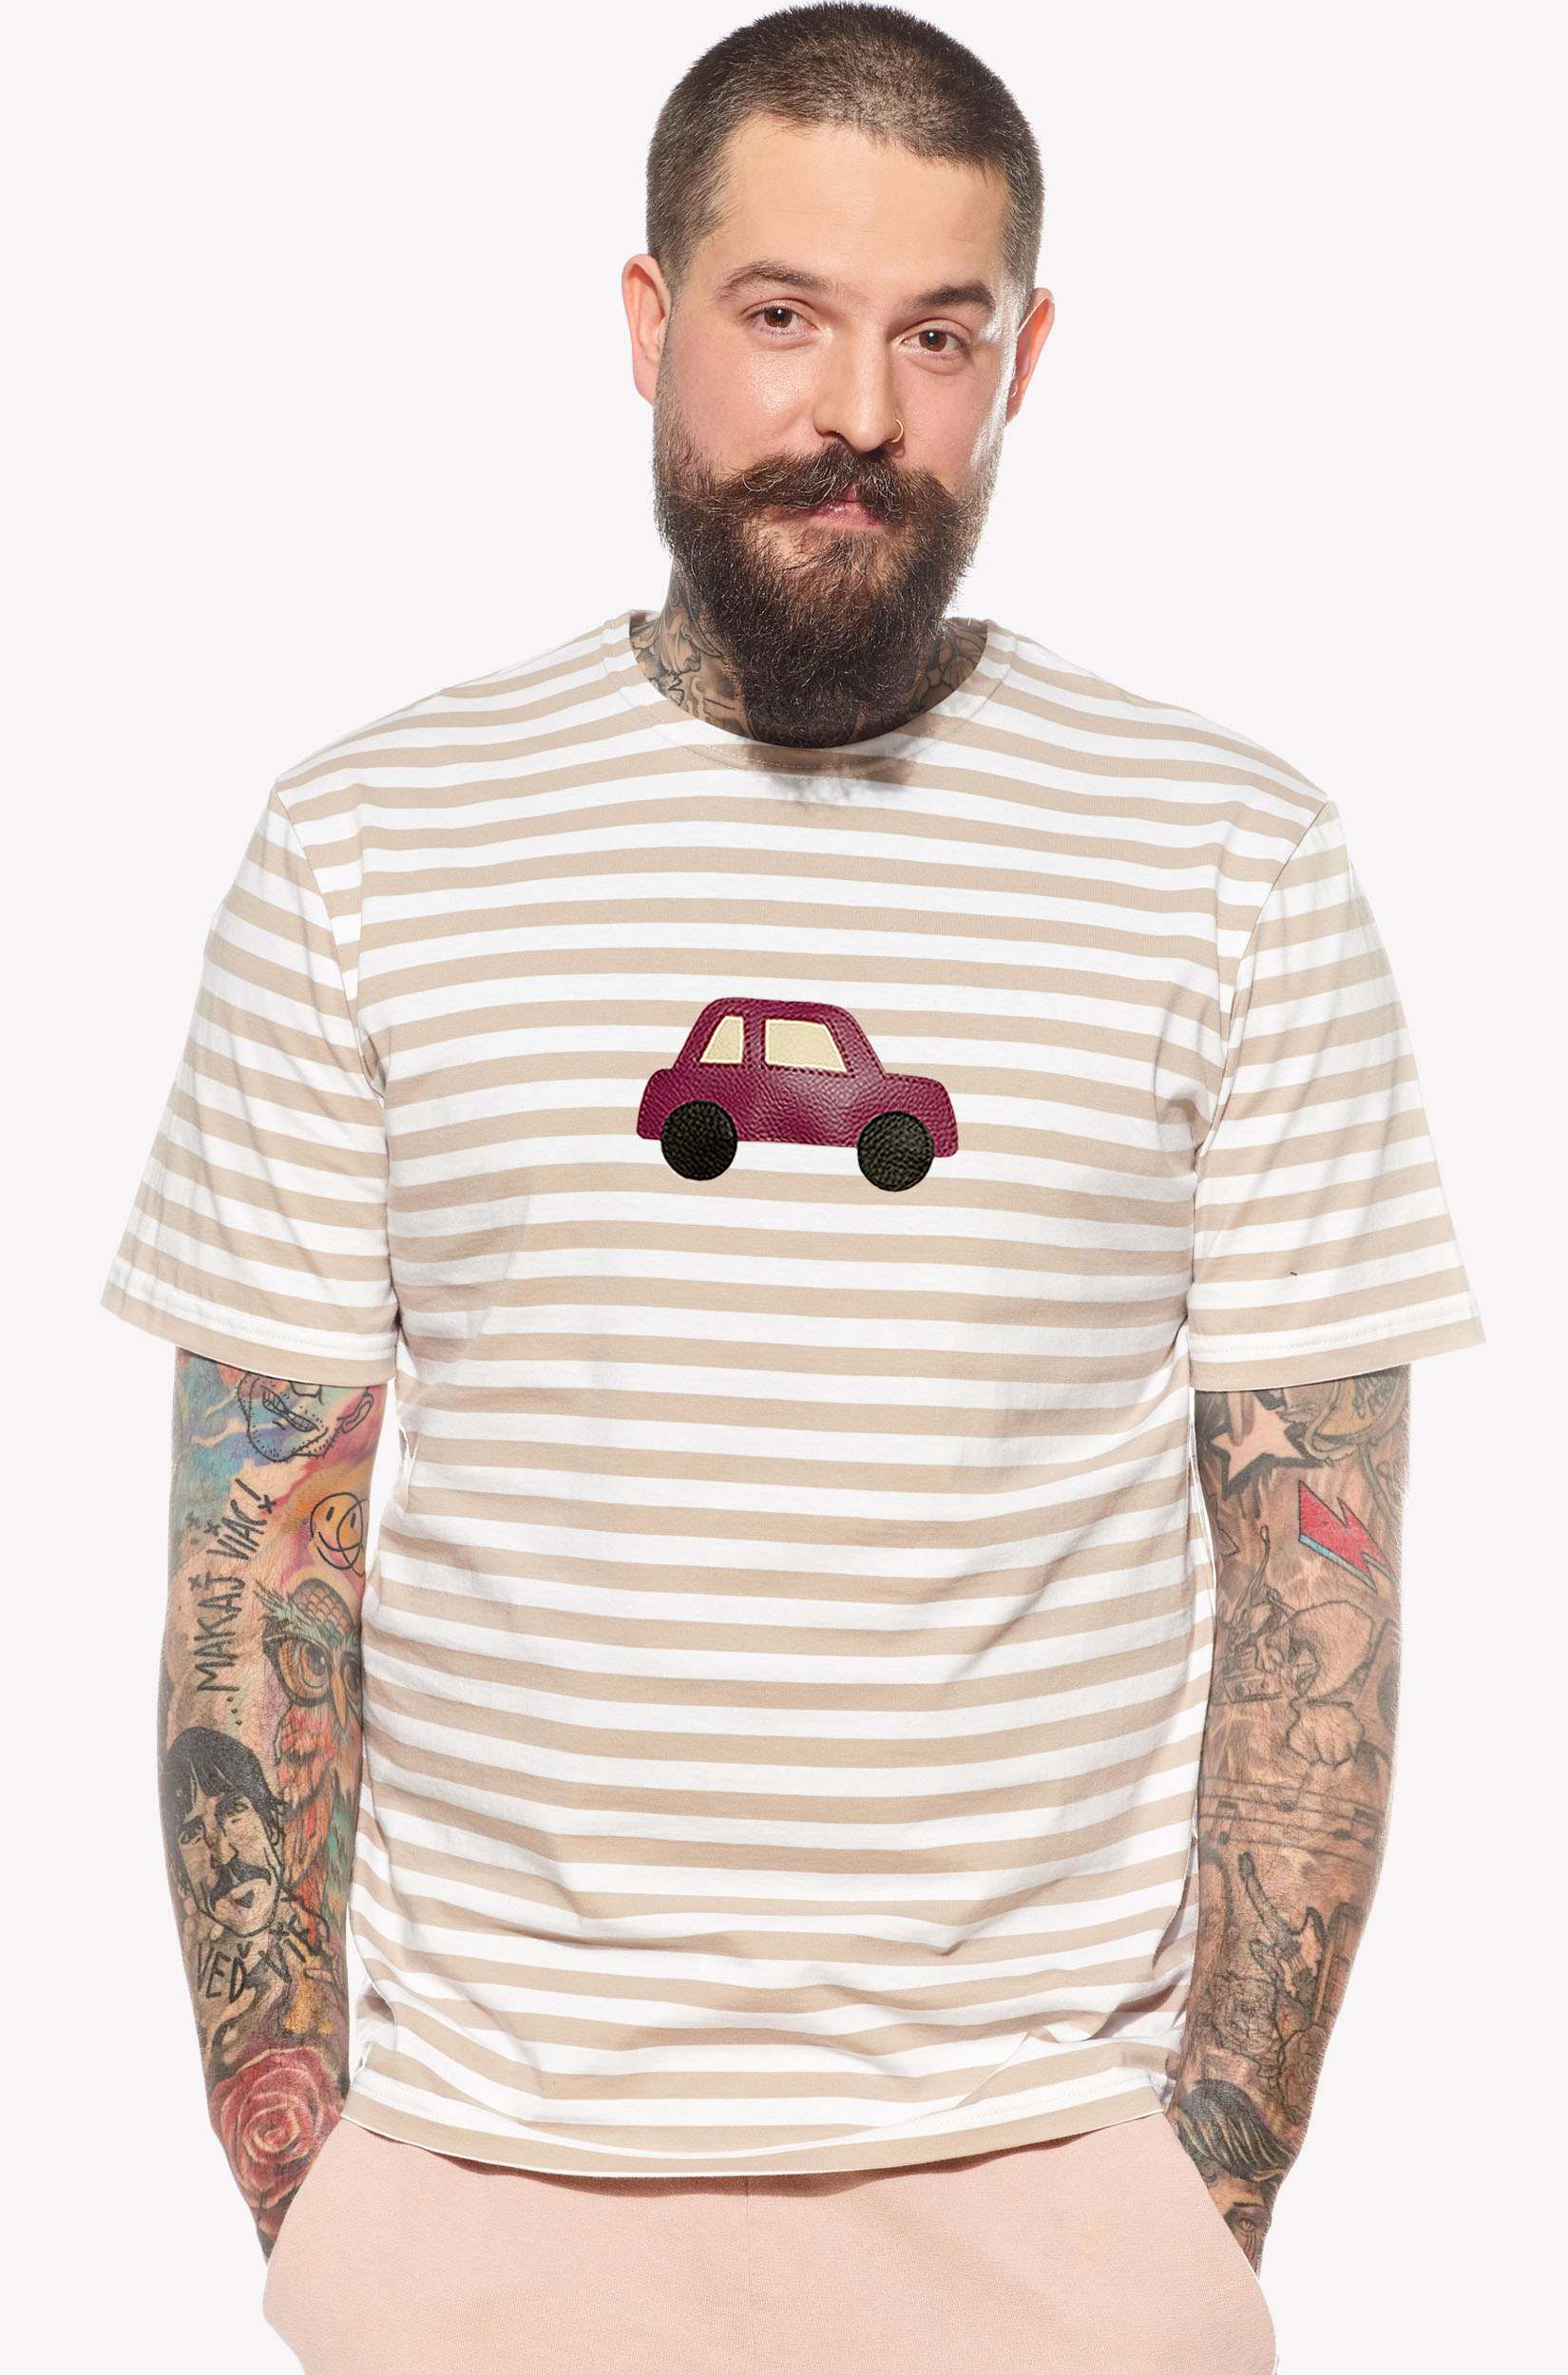 Pólók autóval